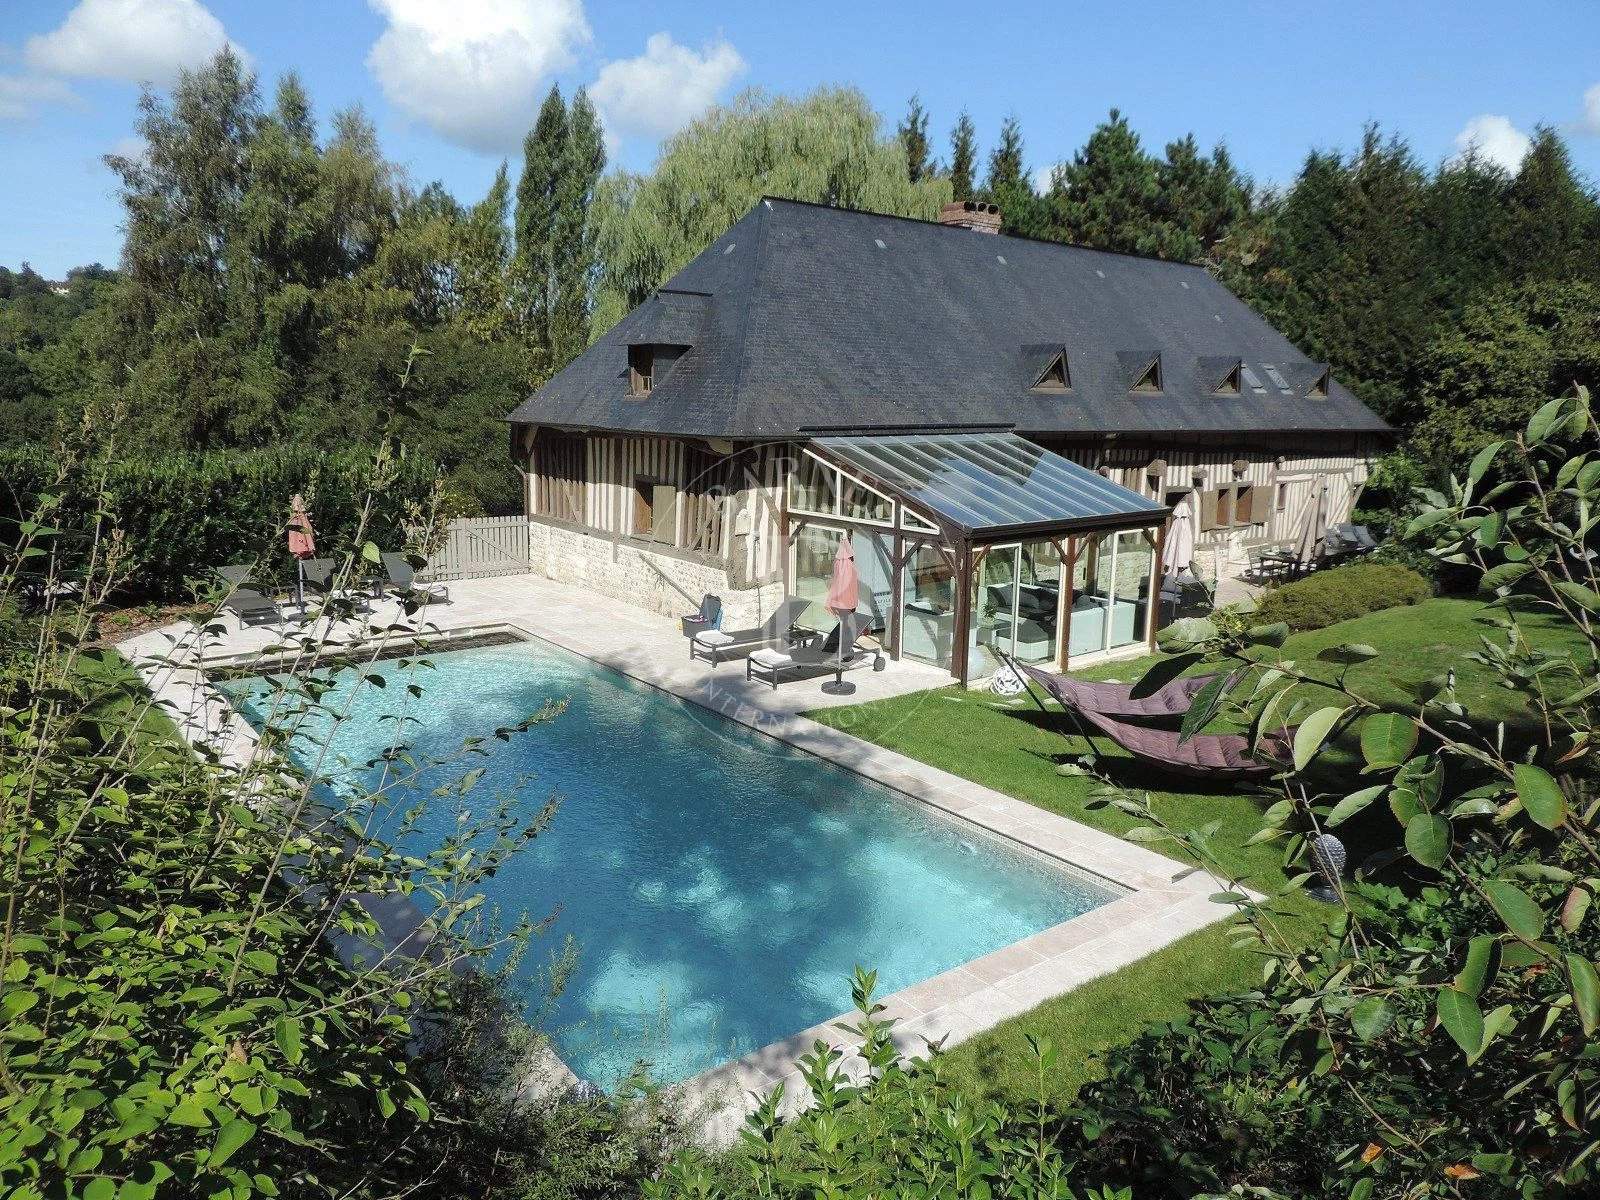 Proche Deauville Propriété de caractère - 6 chambres - piscine chauffée, tennis, parc paysager 1Ha picture 3